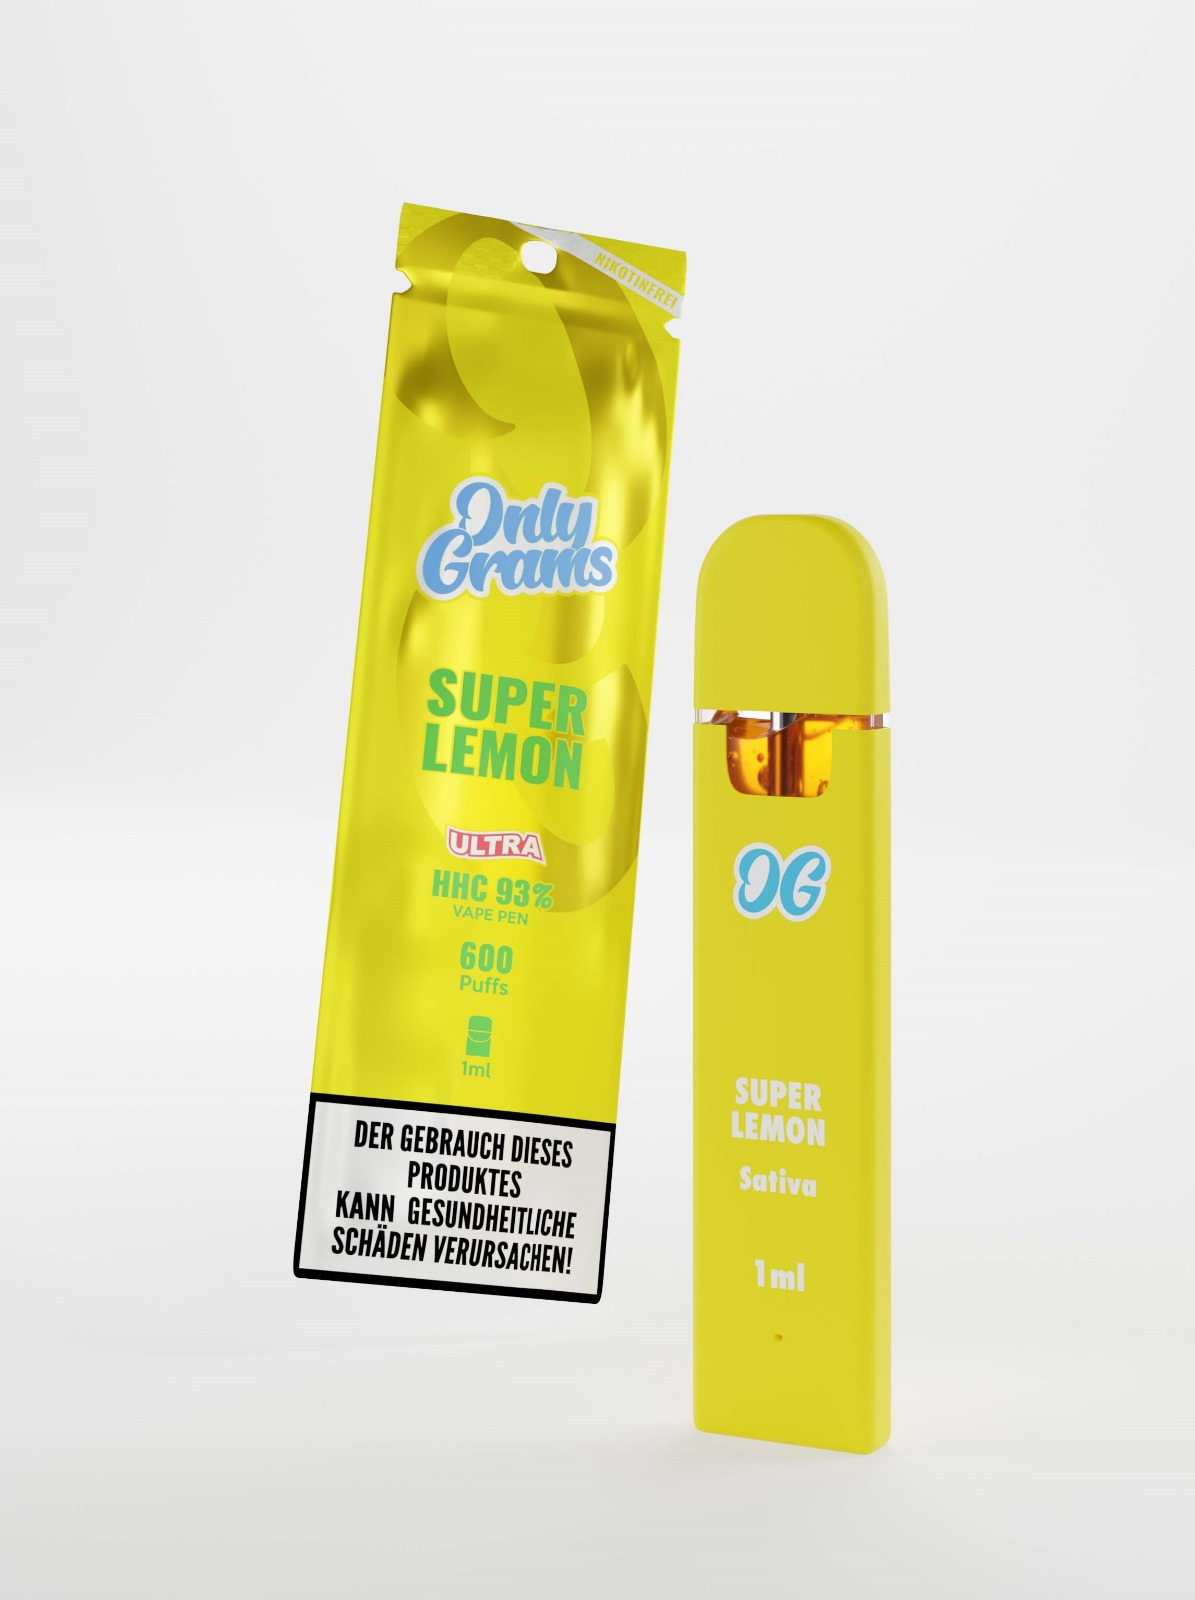 Only Grams - Super Lemon (Sativa) - 93% HHC 1 ml Disposable Vape Pen